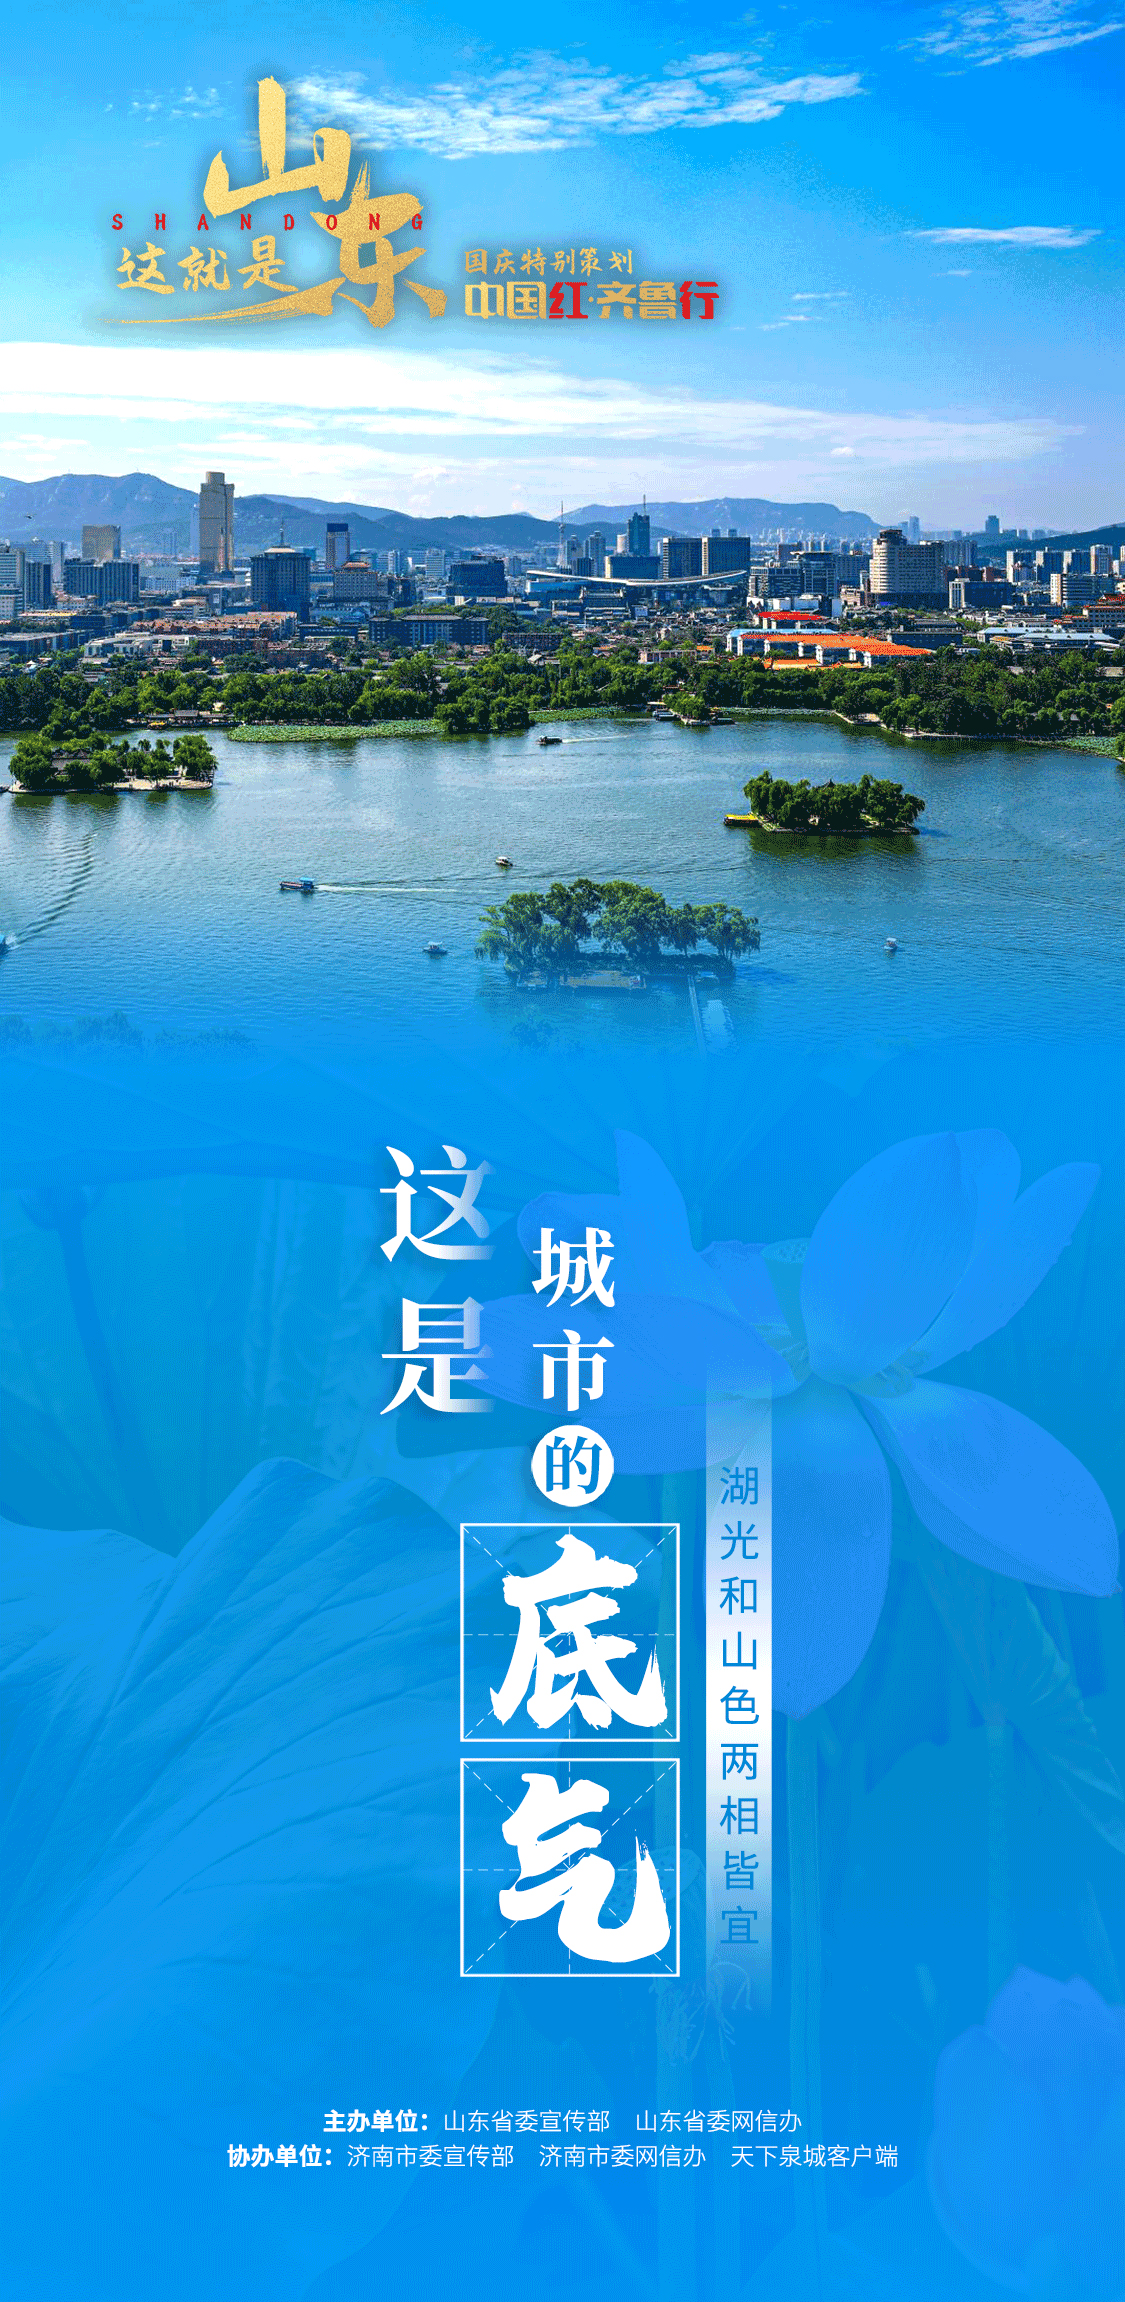 【中国红·齐鲁行】这是黄河的宣言、这是包容的胸怀、这是城市的底气……这就是山东